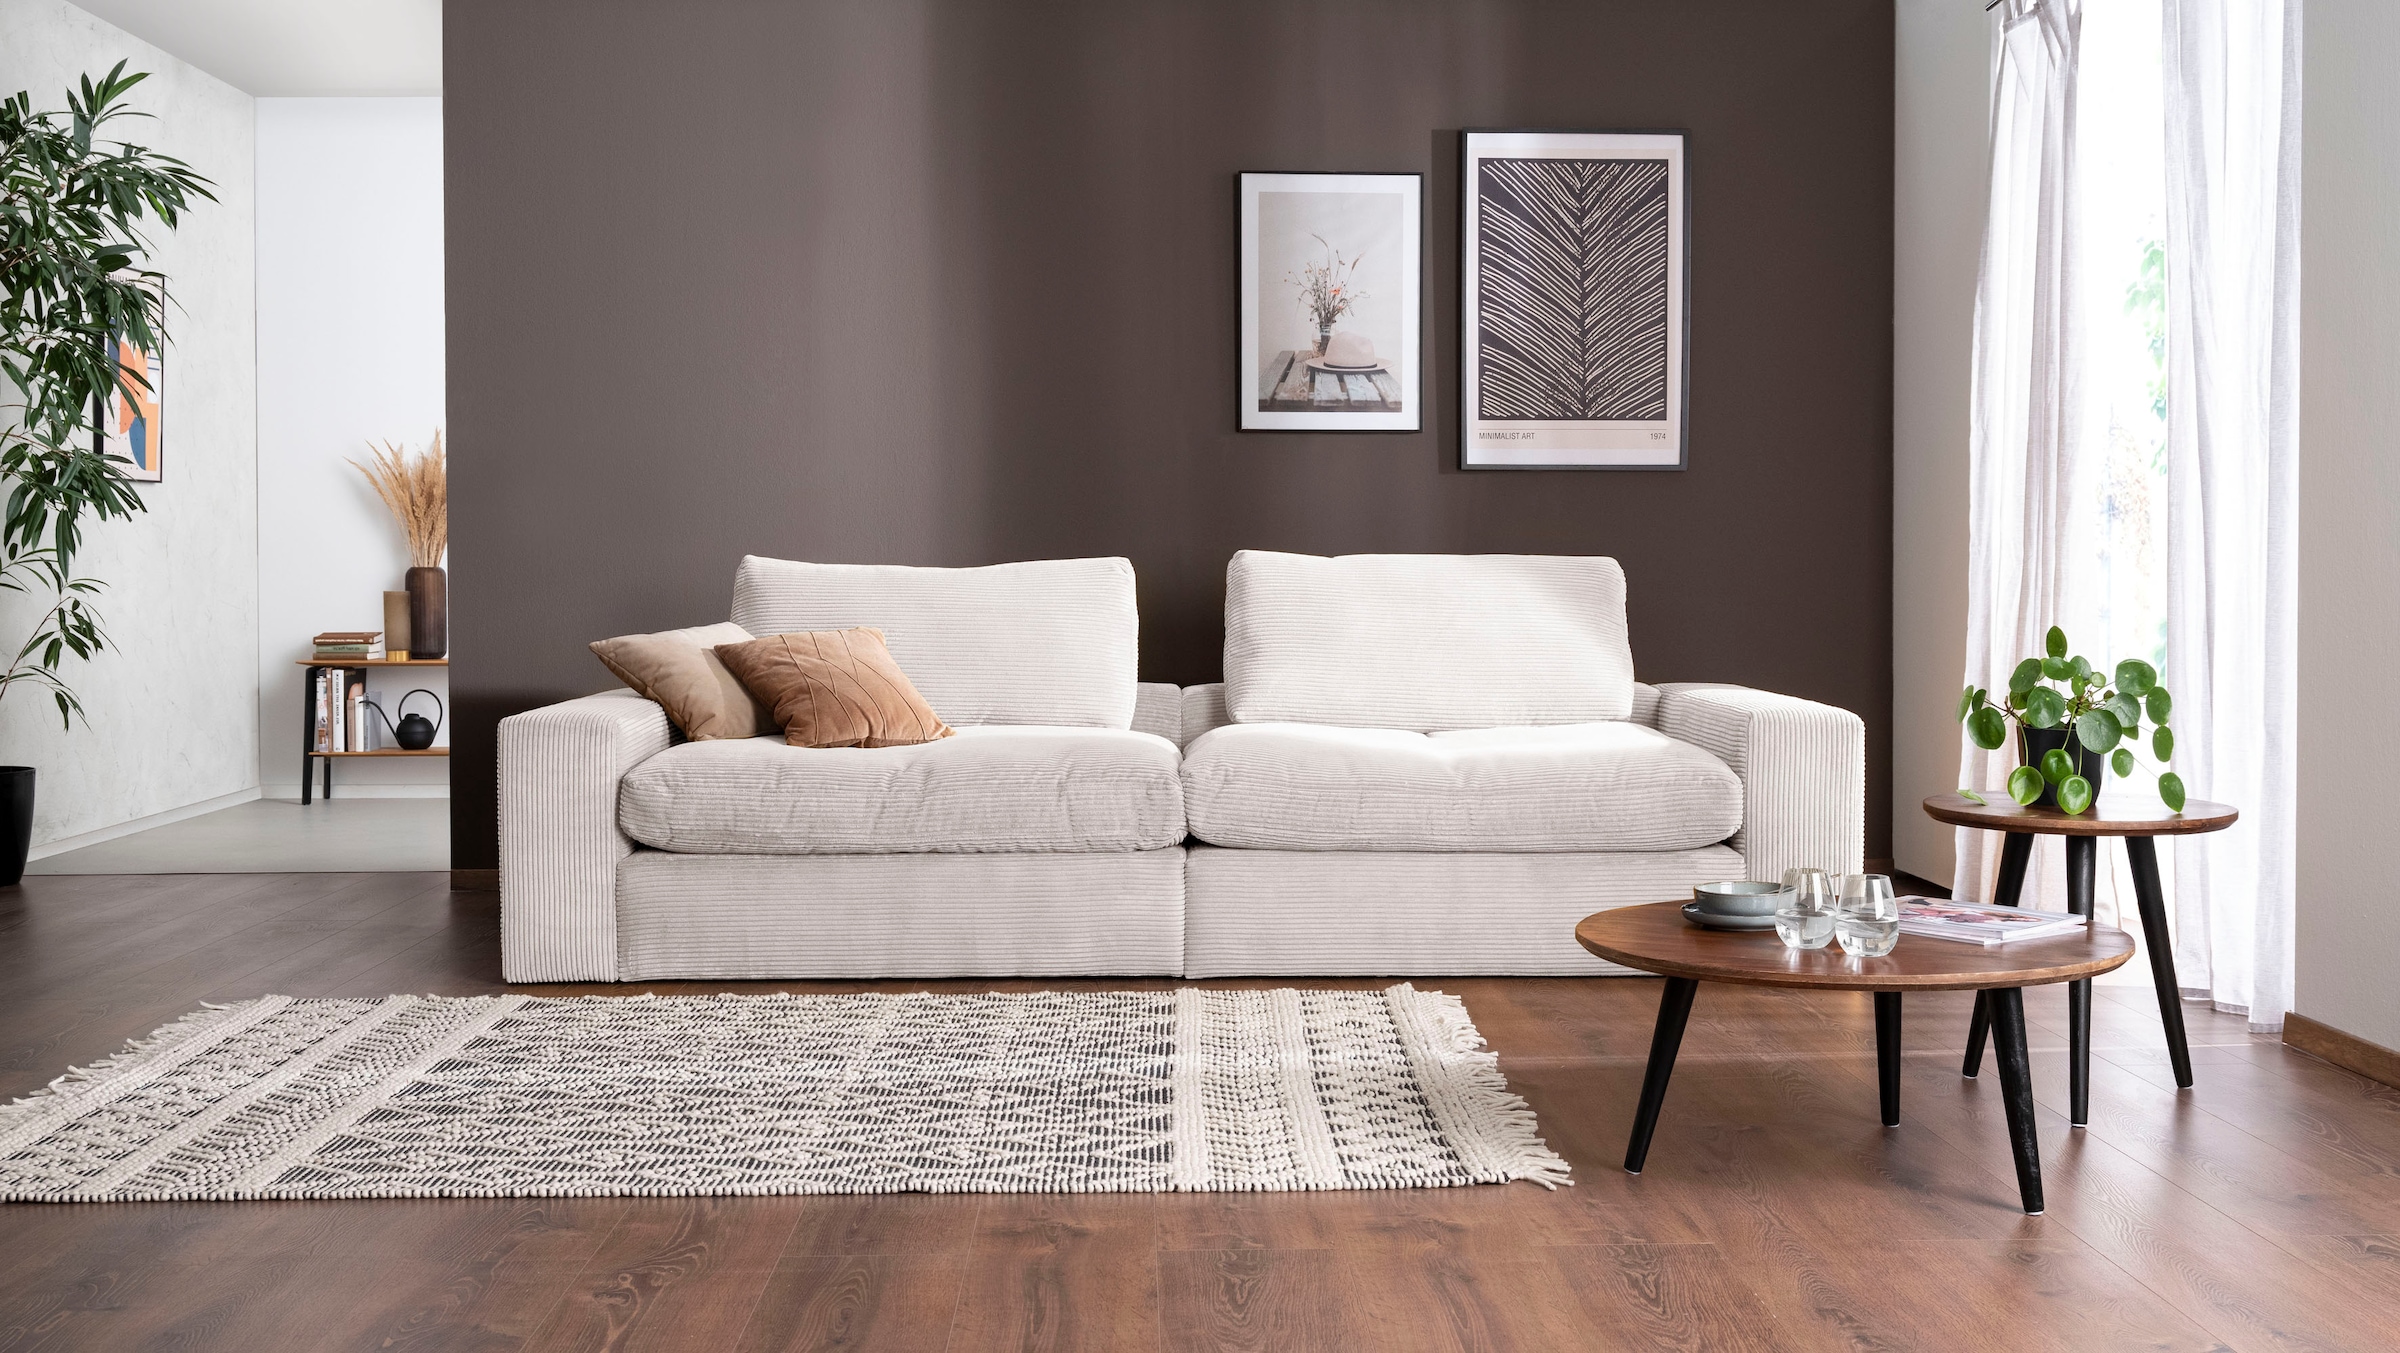 Big-Sofa »Sandy«, 266 cm breit und 98 cm tief, in modernem Cordstoff